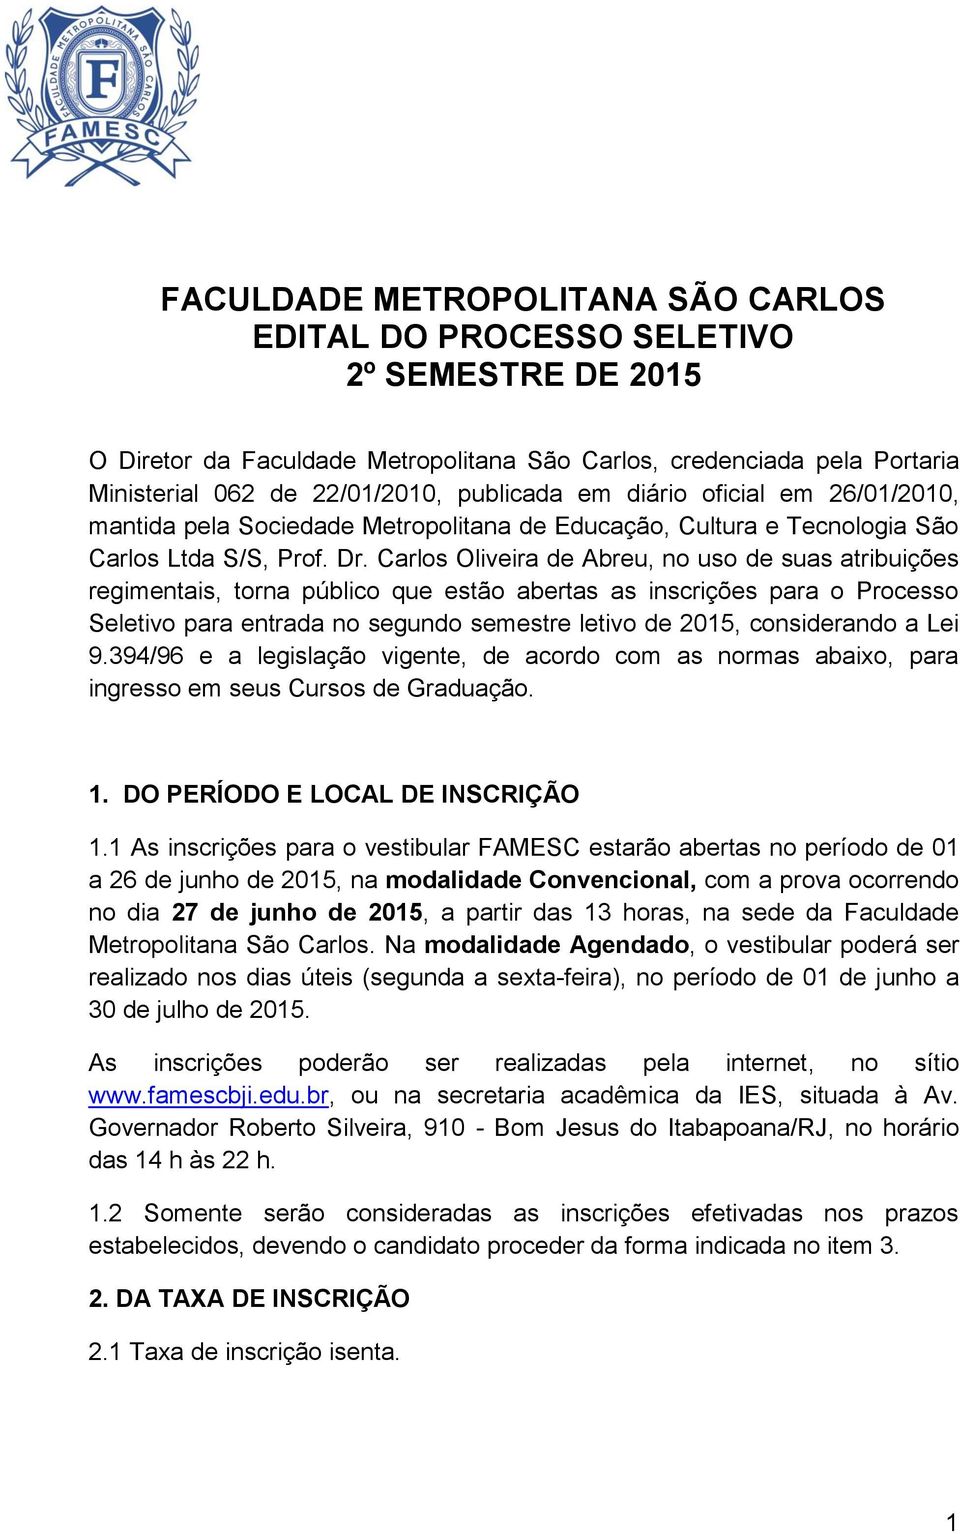 Carlos Oliveira de Abreu, no uso de suas atribuições regimentais, torna público que estão abertas as inscrições para o Processo Seletivo para entrada no segundo semestre letivo de 2015, considerando